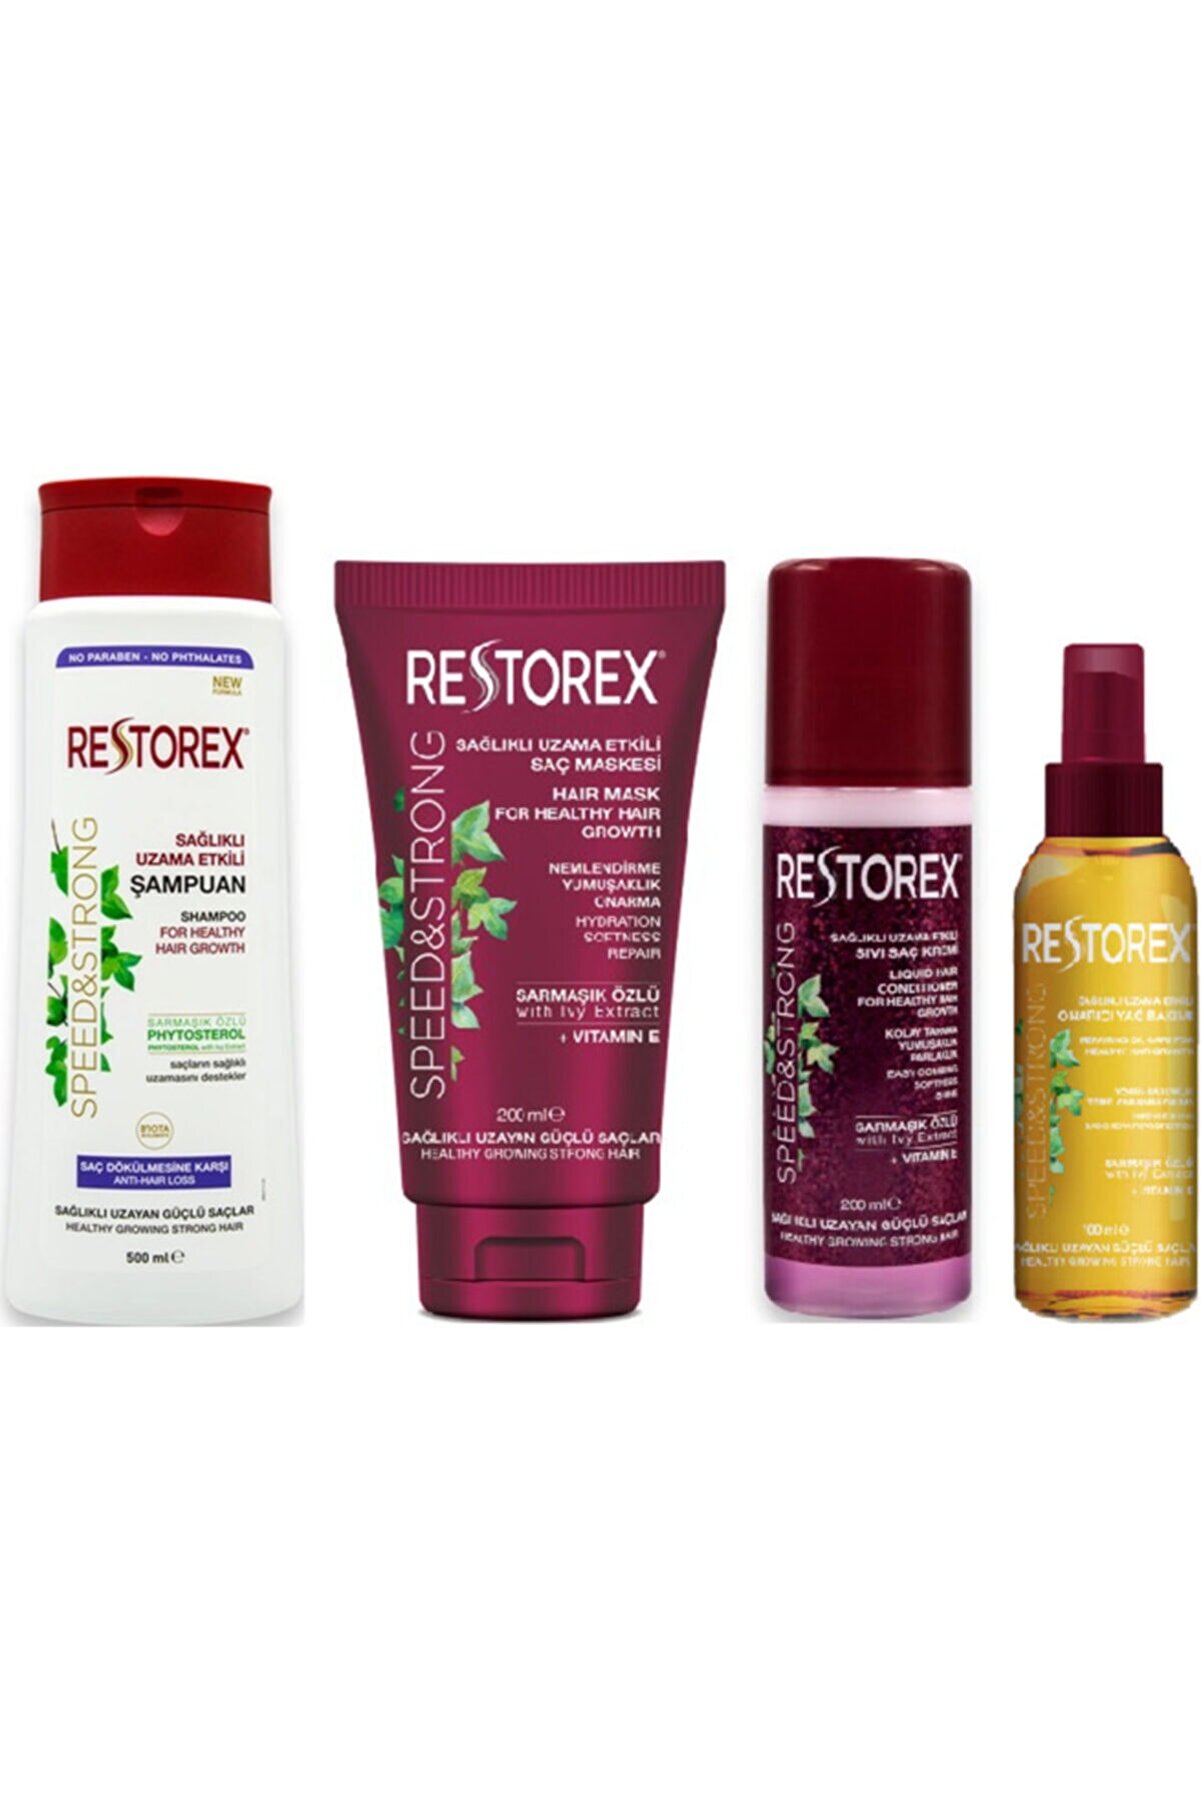 Restorex Şampuan 500ml , Saç Maskesi 200ml , Sıvı Saç Kremi 200ml , Onarıcı Yağ Bakımı 100ml